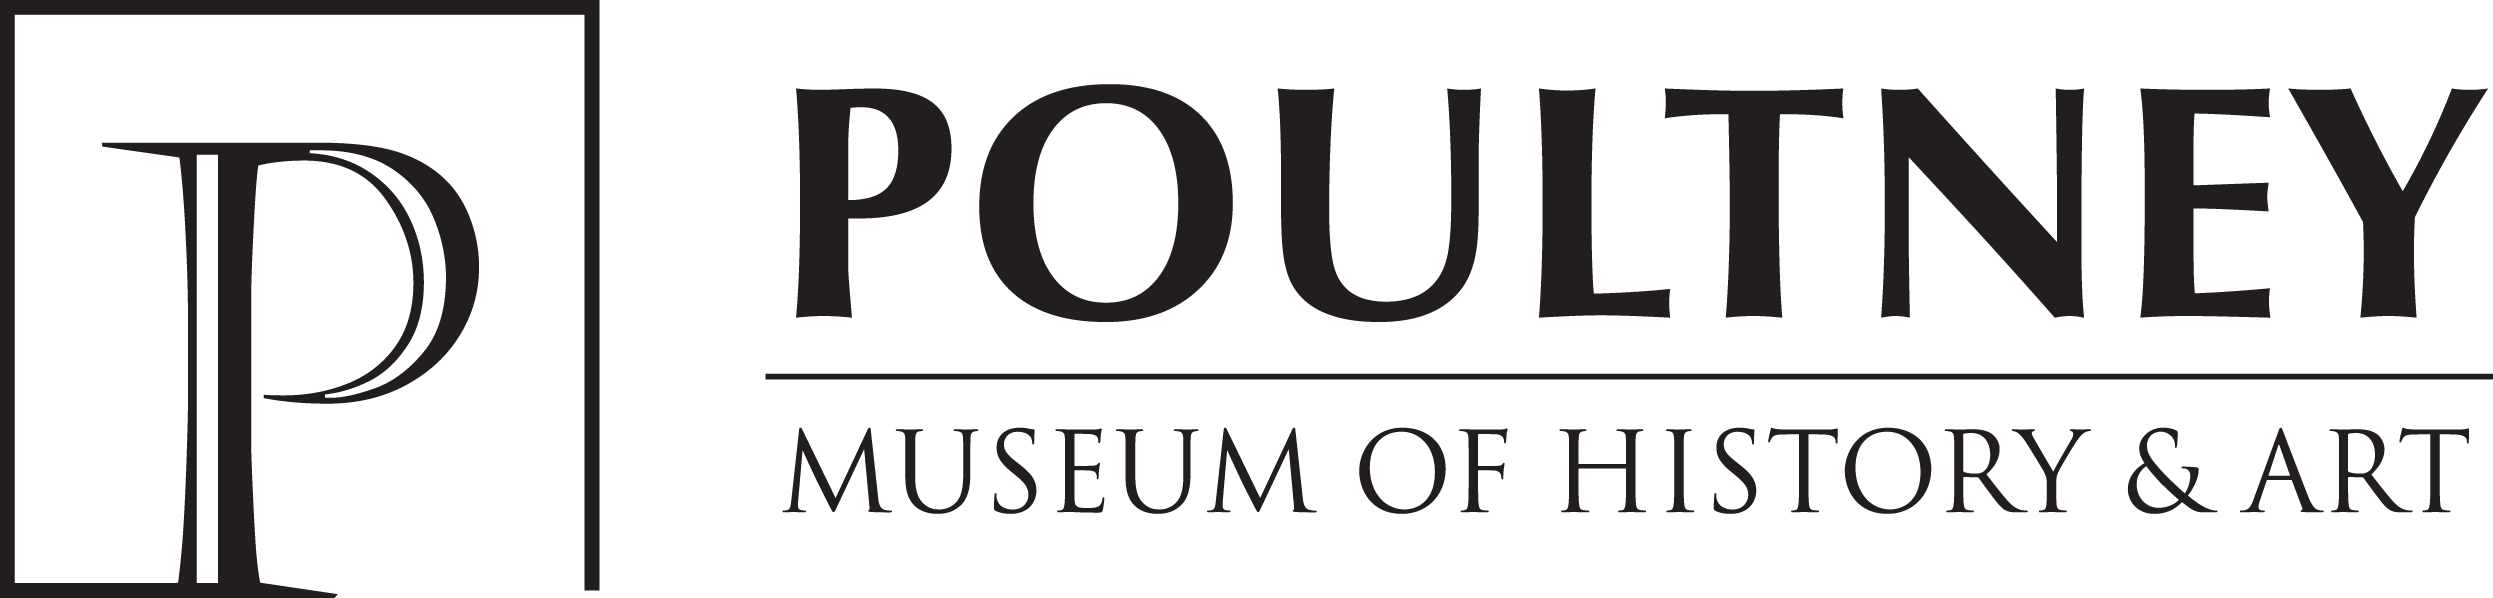 Poultney Museum